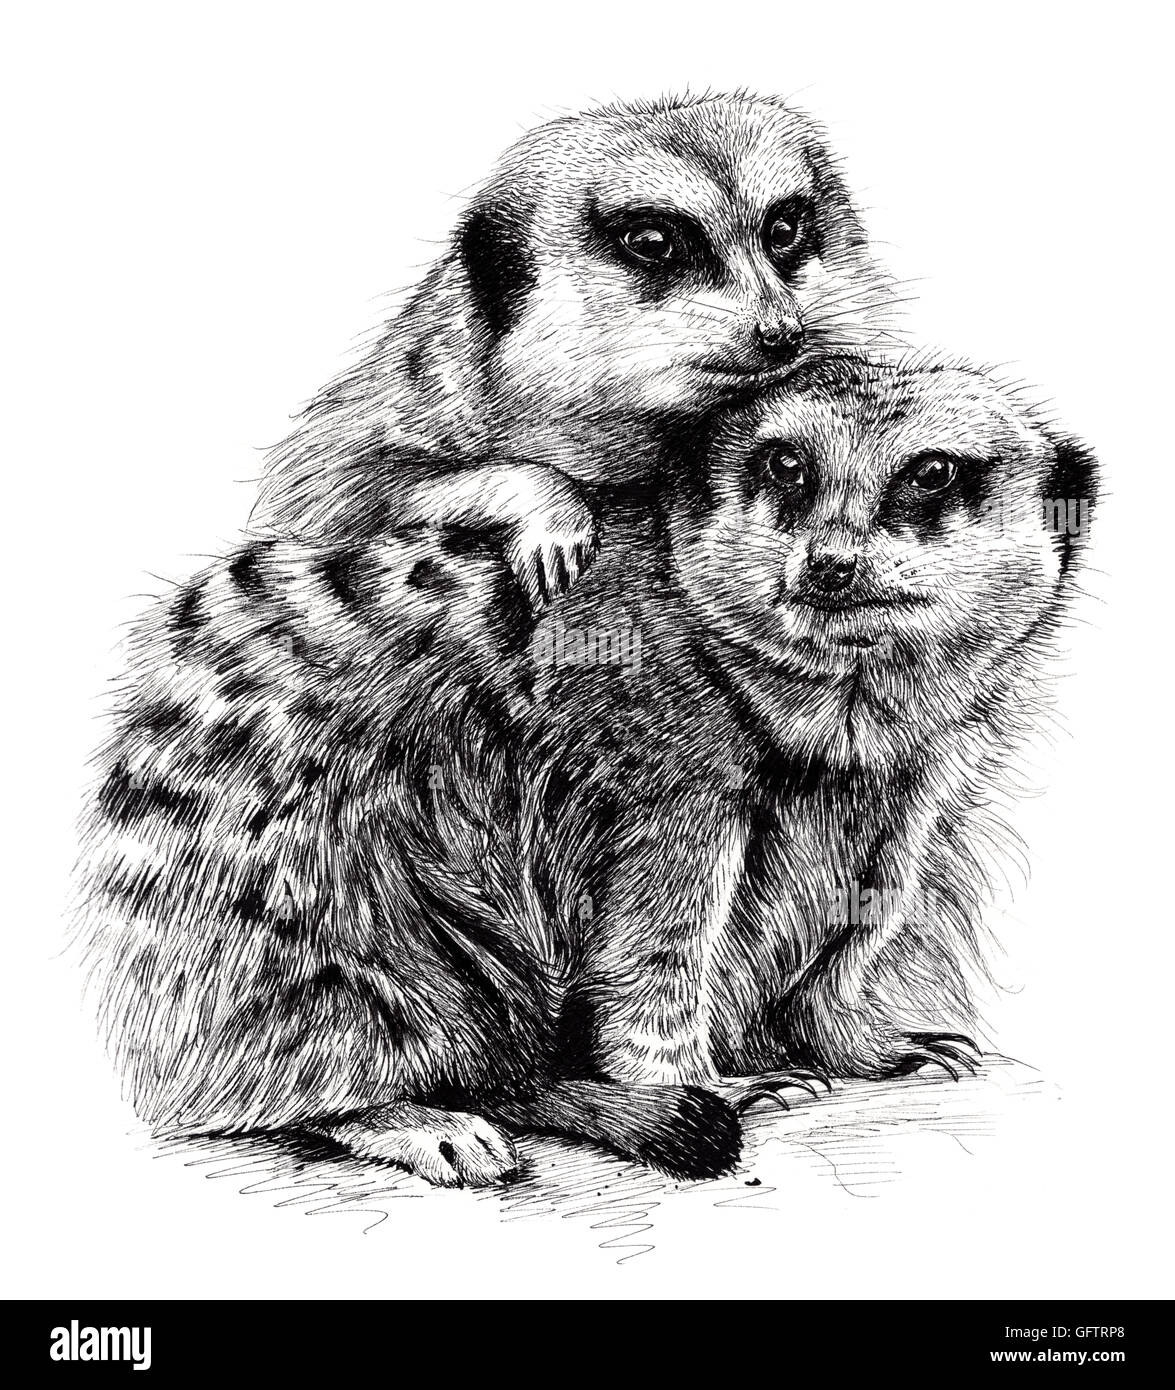 Bocetos detallados de un par de meerkats amontonarse. Foto de stock